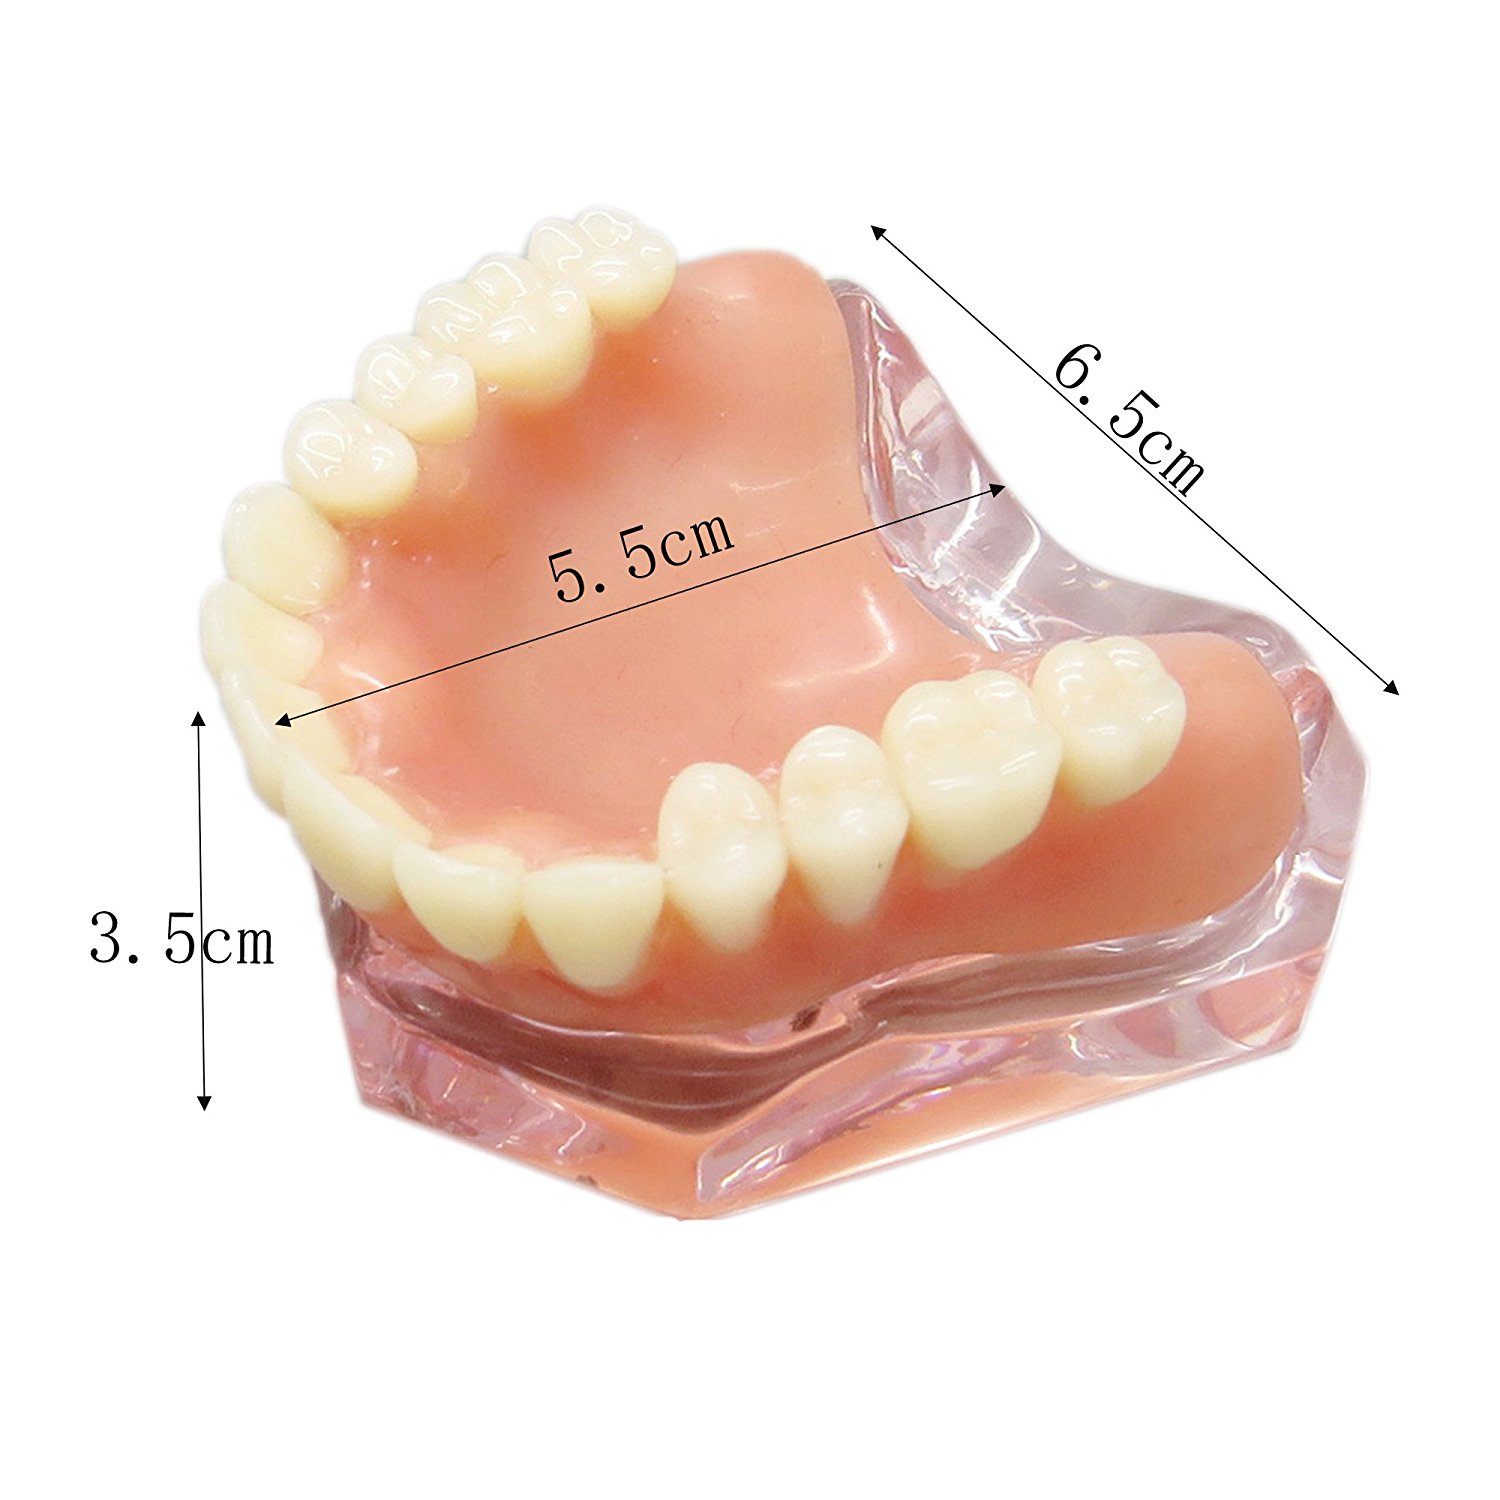 歯科上顎インプラントモデル模型 インプラント研究治療説明用歯列模型 4本釘 取り外し可能|歯科インプラント模型通販-Dentalshop.JP